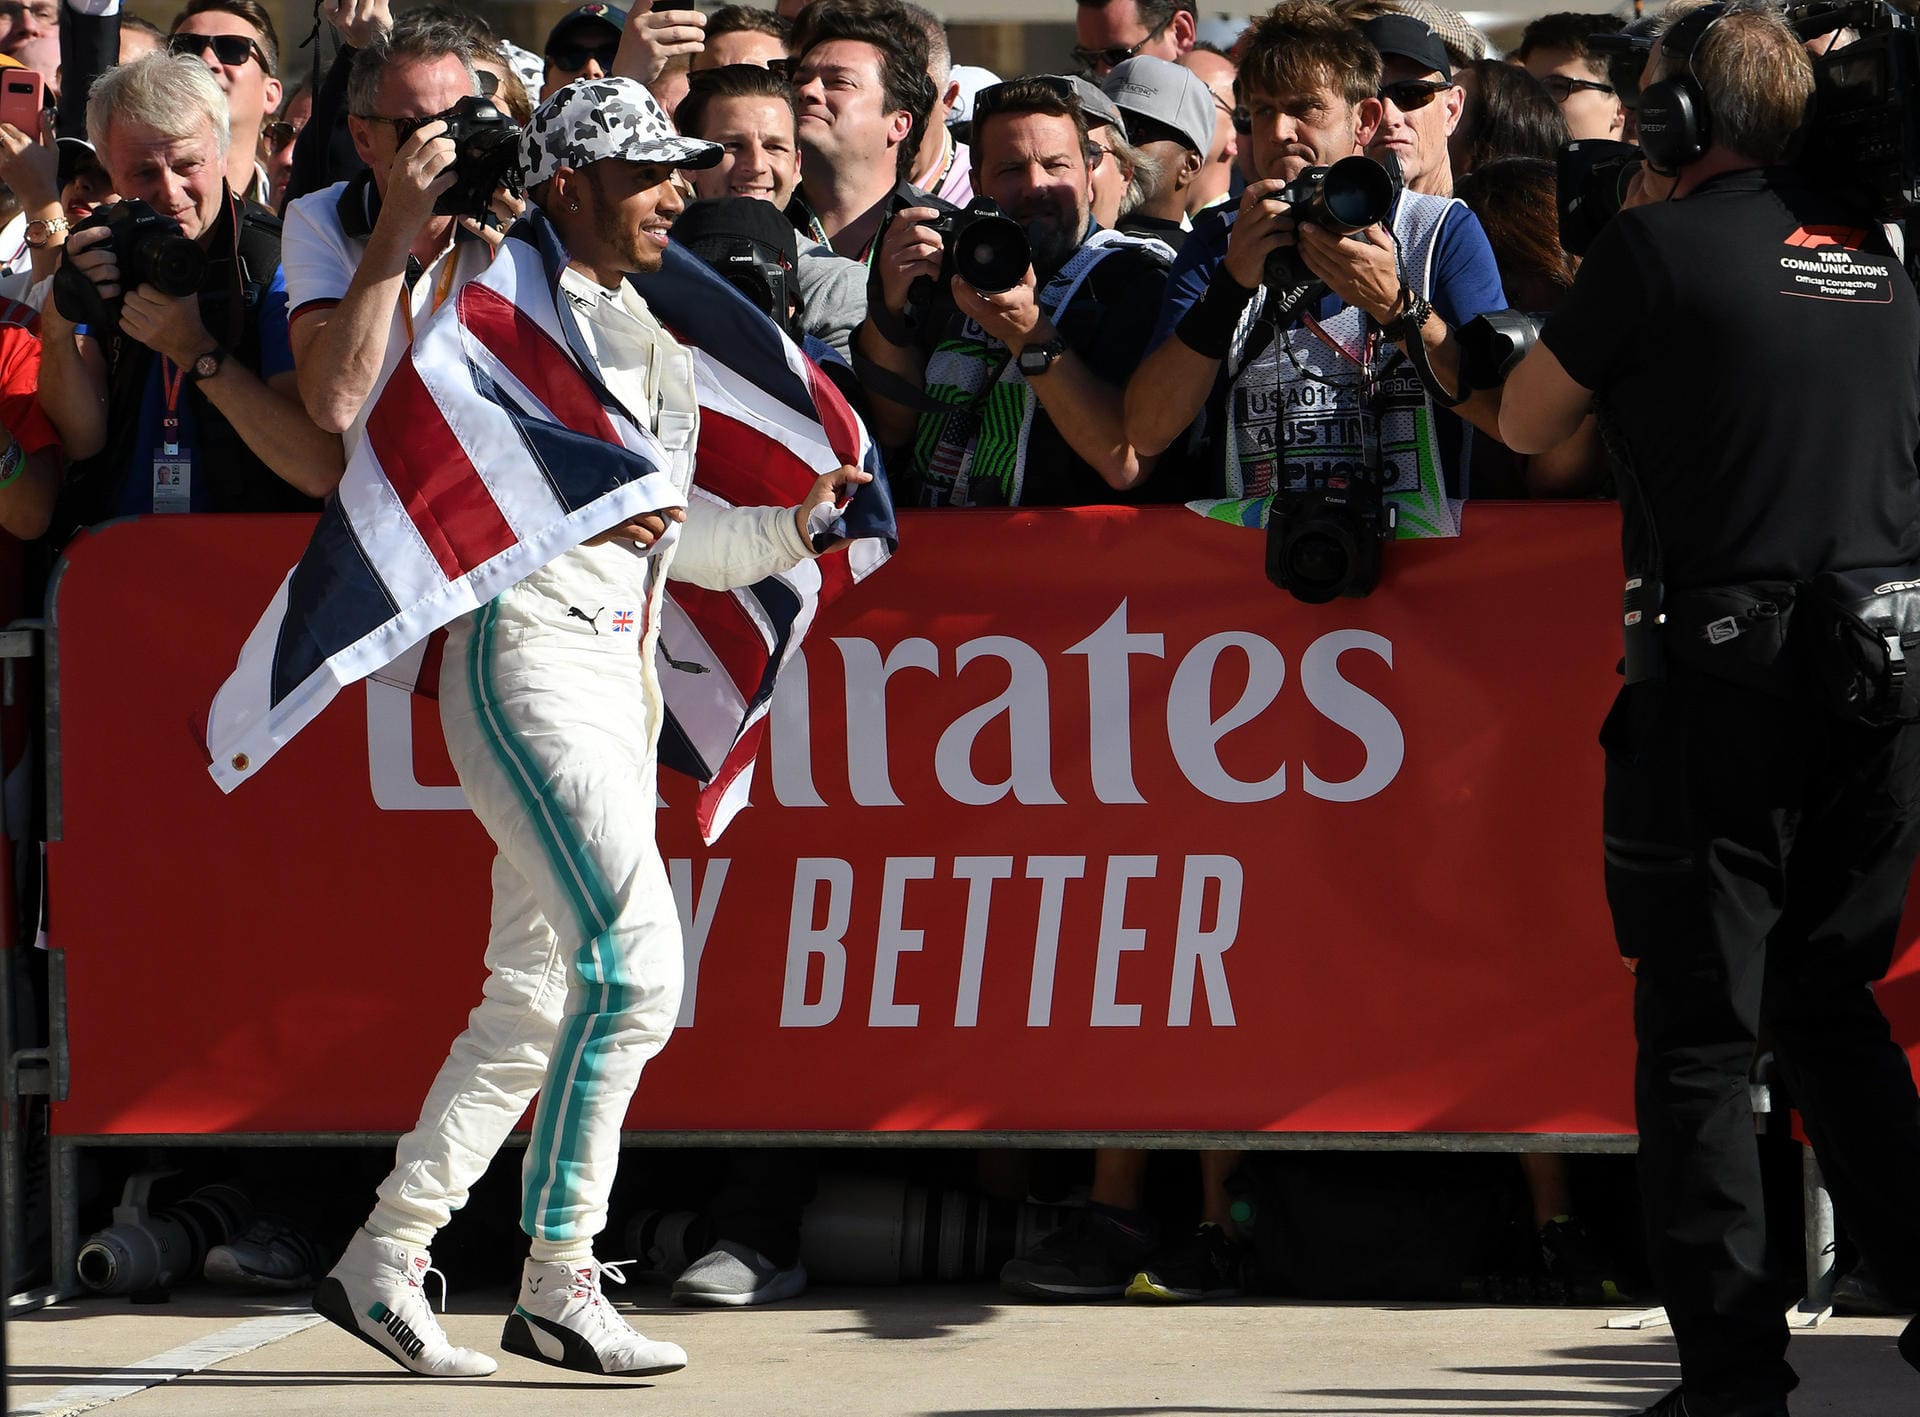 "The Times" (Großbritannien): "Selbstredend ist Hamiltons Platz in der Geschichte. Er hat seinen Platz im Pantheon der sportlichen Größen bestätigt, nicht nur in der Formel 1. Seine bemerkenswerte Leistung ist nun für immer in die Rekordbücher eingebrannt, ohne dass ein Ende dazu in Sicht ist, was er erreichen kann."